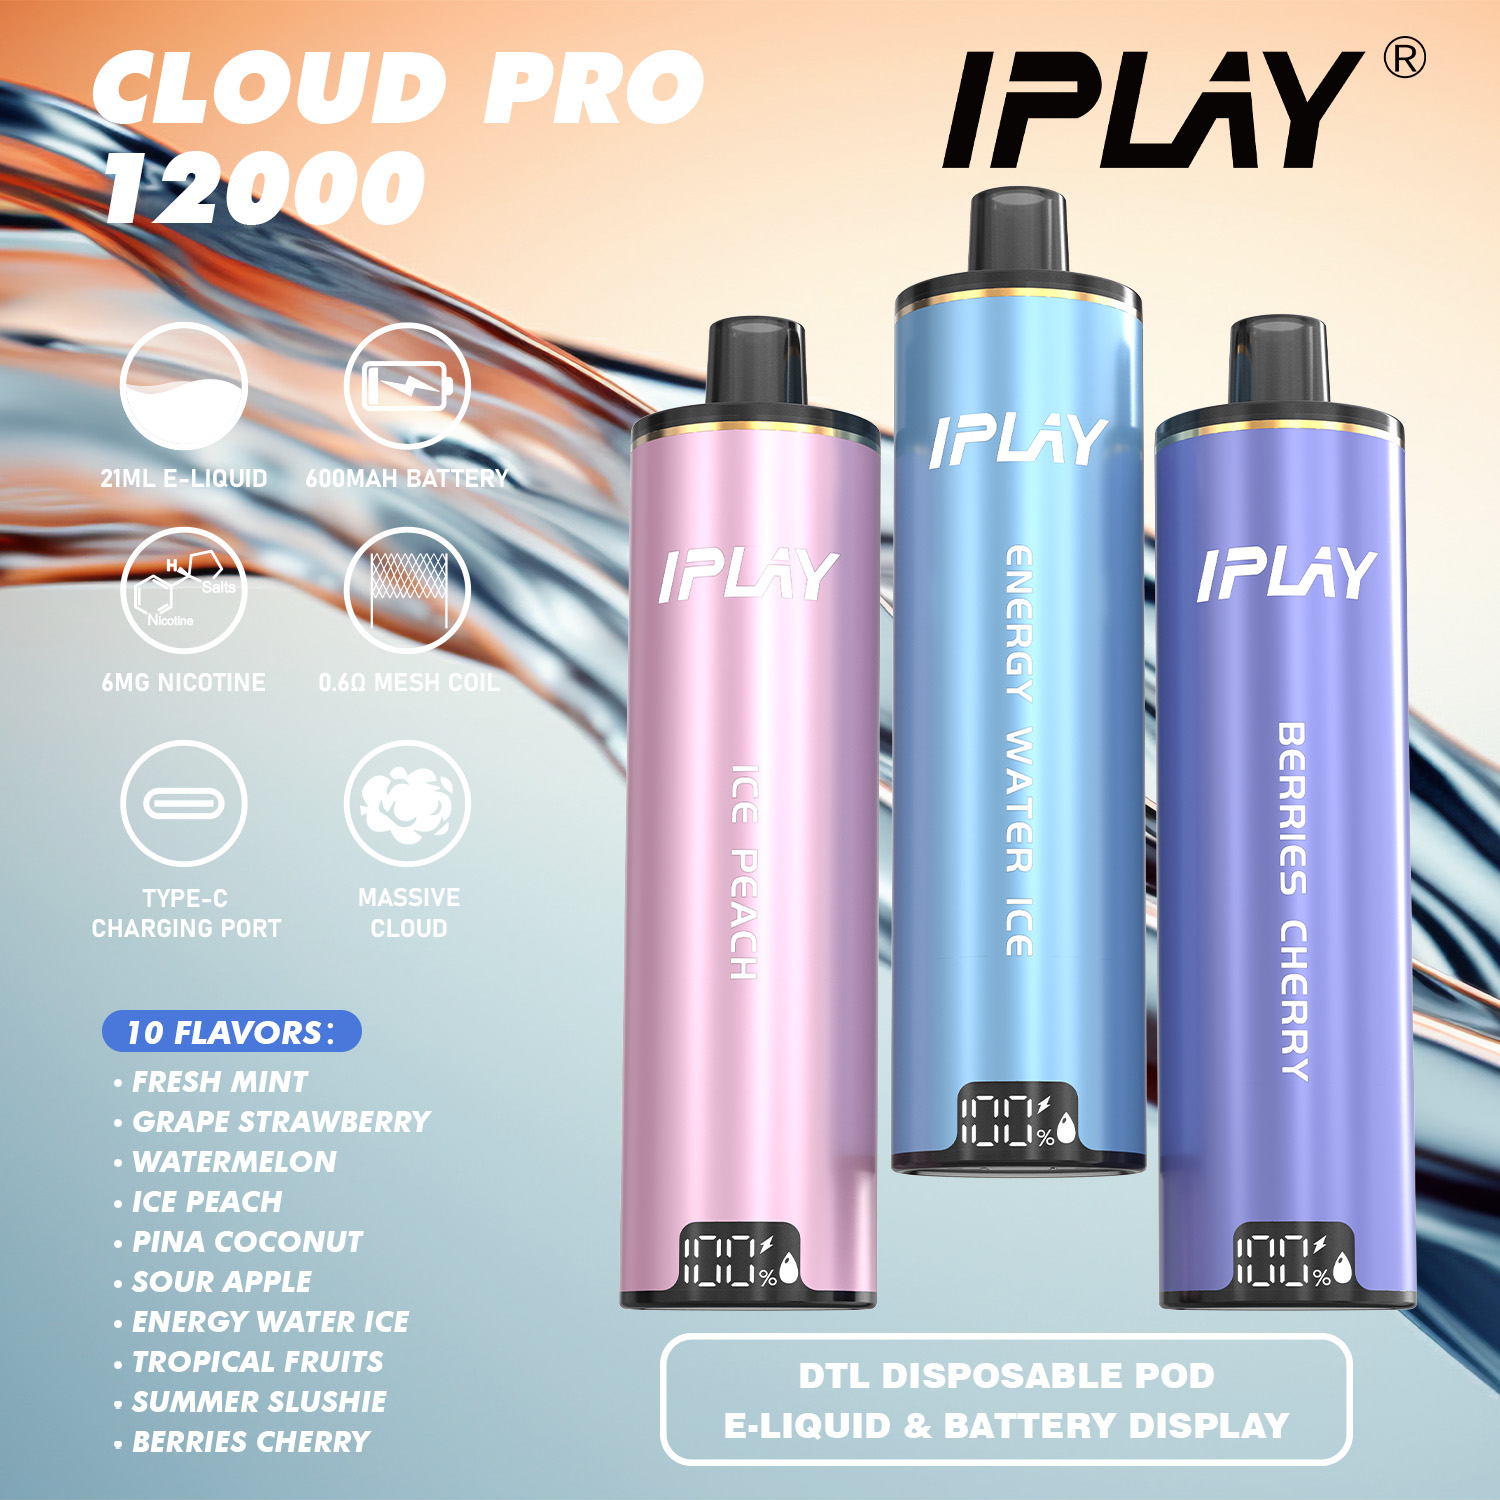 iplay cloud pro 12000 puff